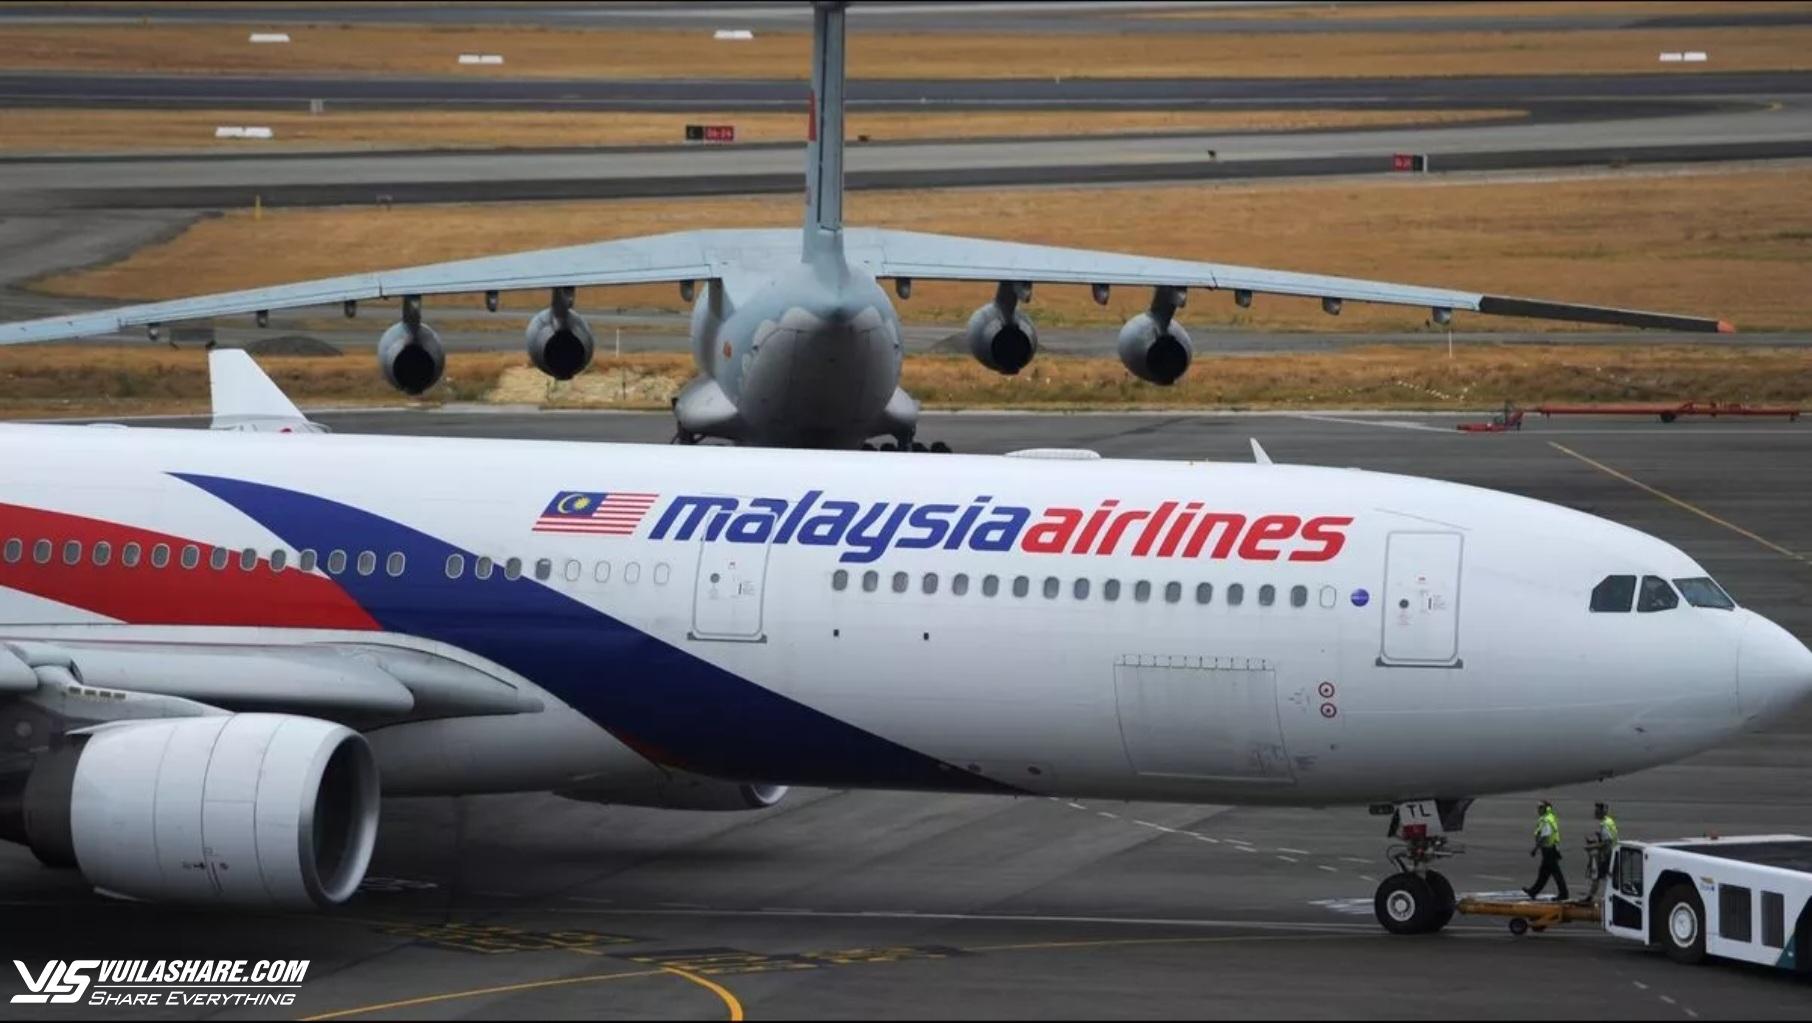 Loạt giả thuyết chấn động về MH370, bao gồm rơi trong rừng sâu Campuchia- Ảnh 2.